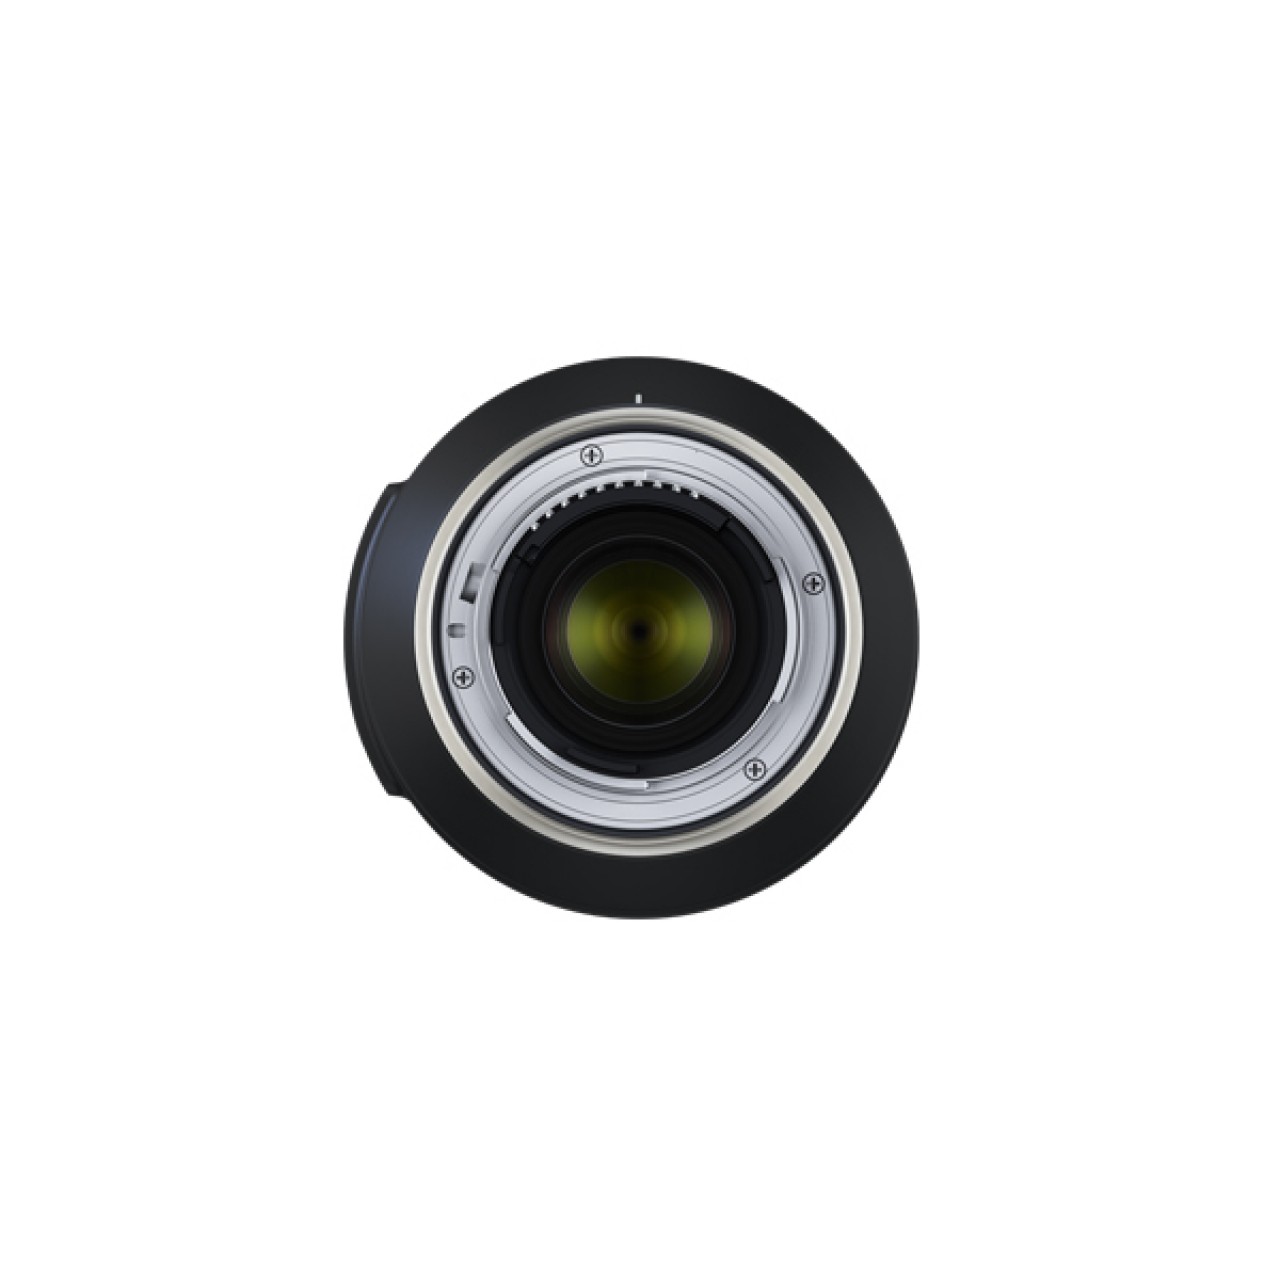 Tamron AF 100-400mm f/4.5-6.3 Di VC USD Nikon F